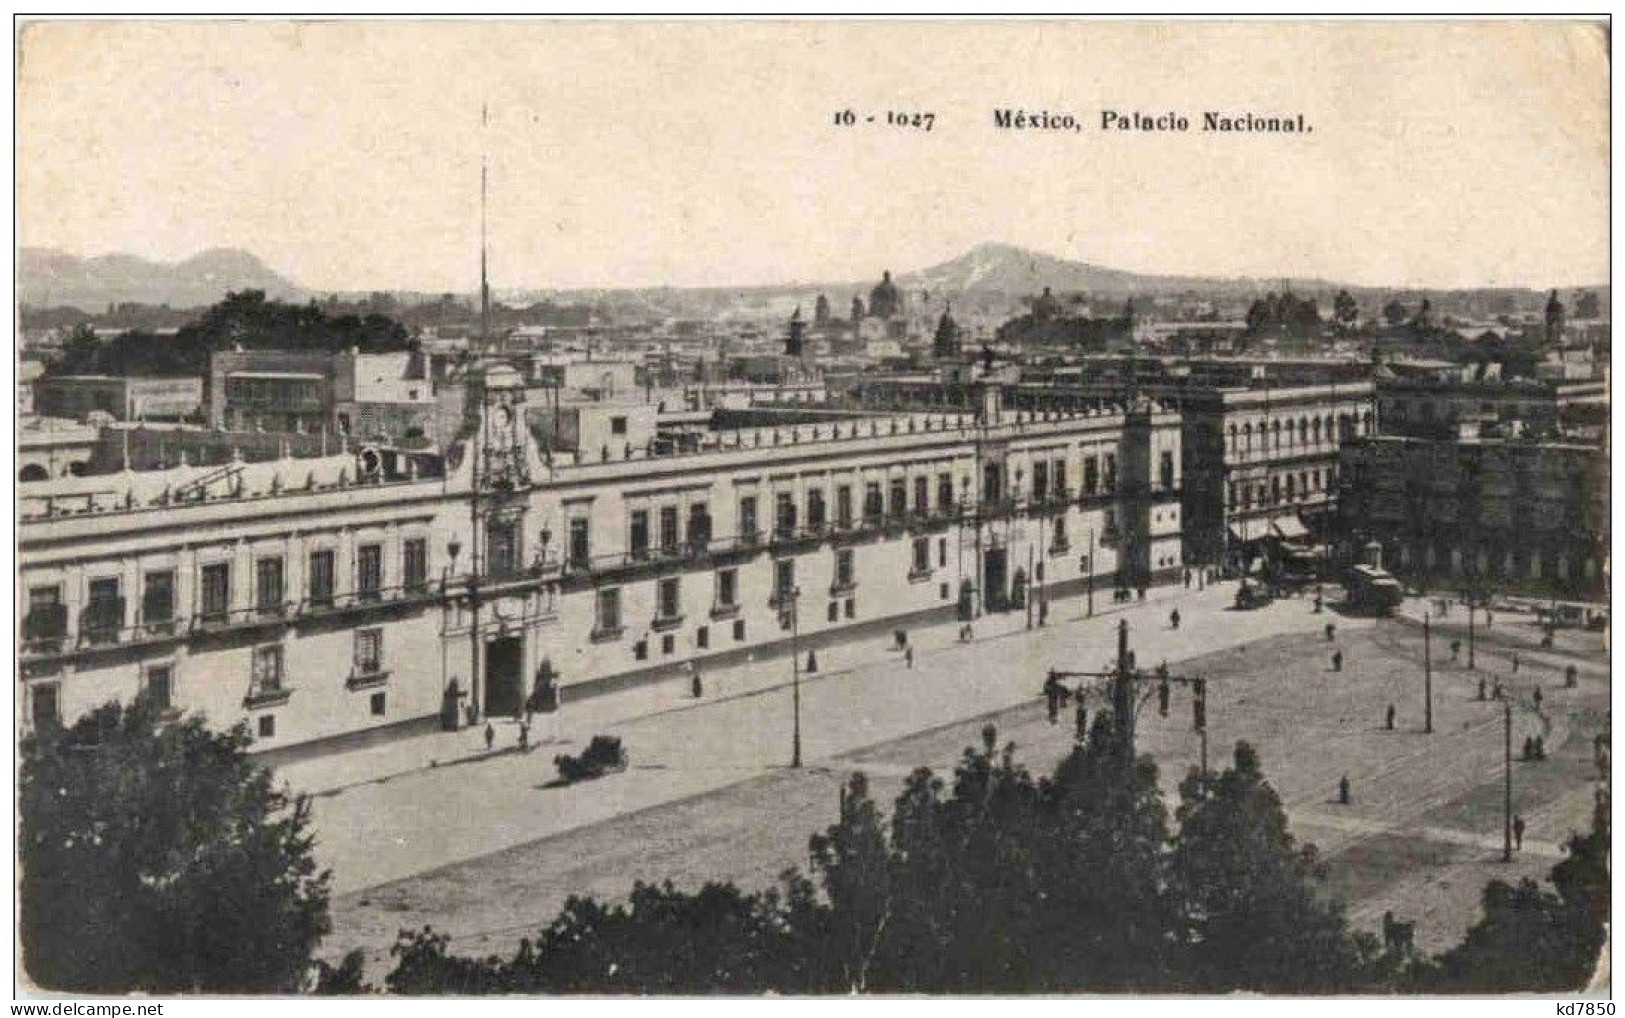 Mexico - Palacio Nacional - Mexico